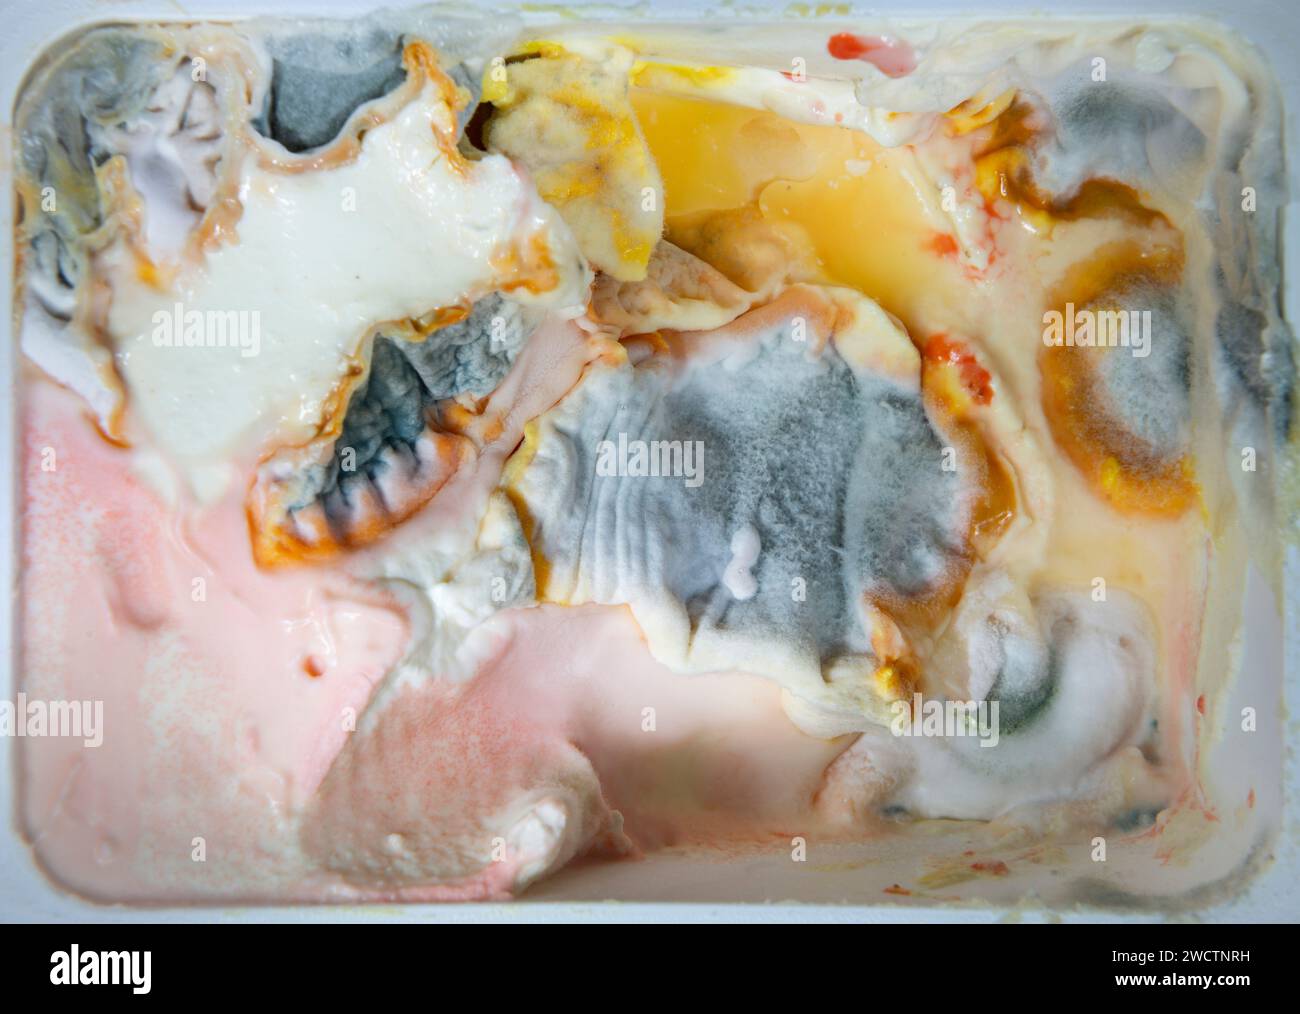 Ein geöffnetes Becher Frischkäse, das sich in einen Pilzbrüter verwandelt hat Stockfoto